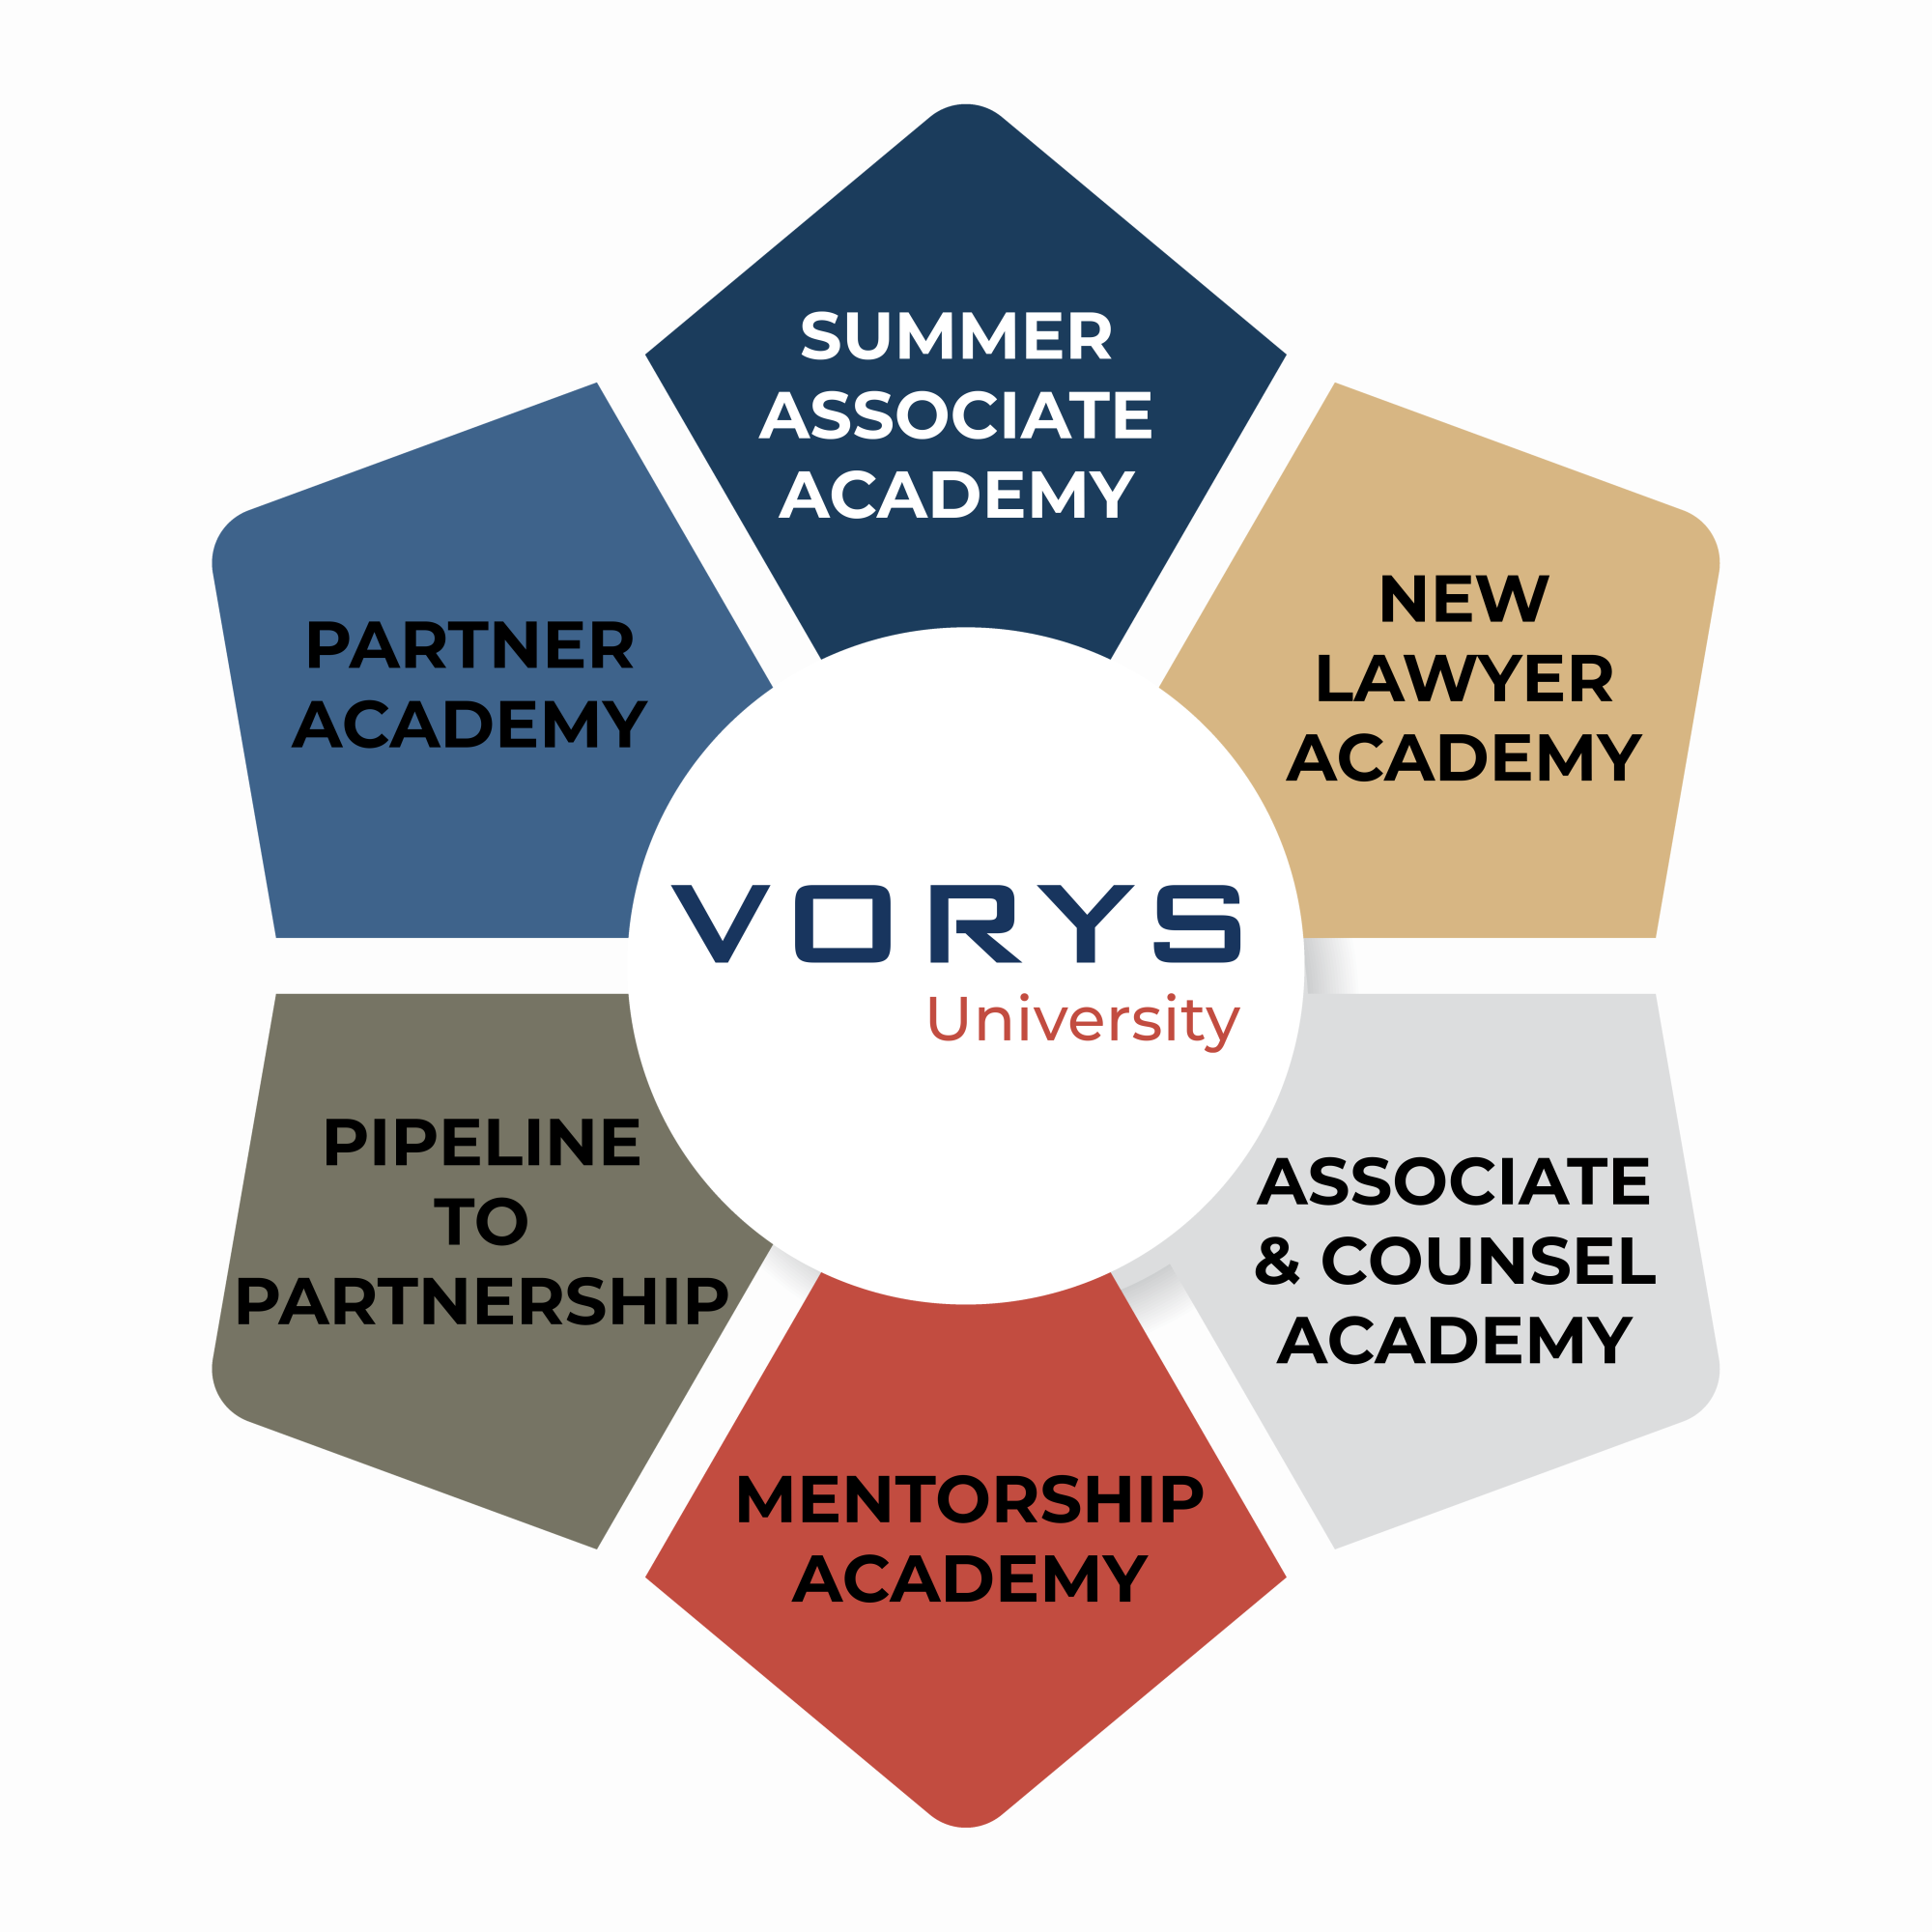 Vorys University Academies